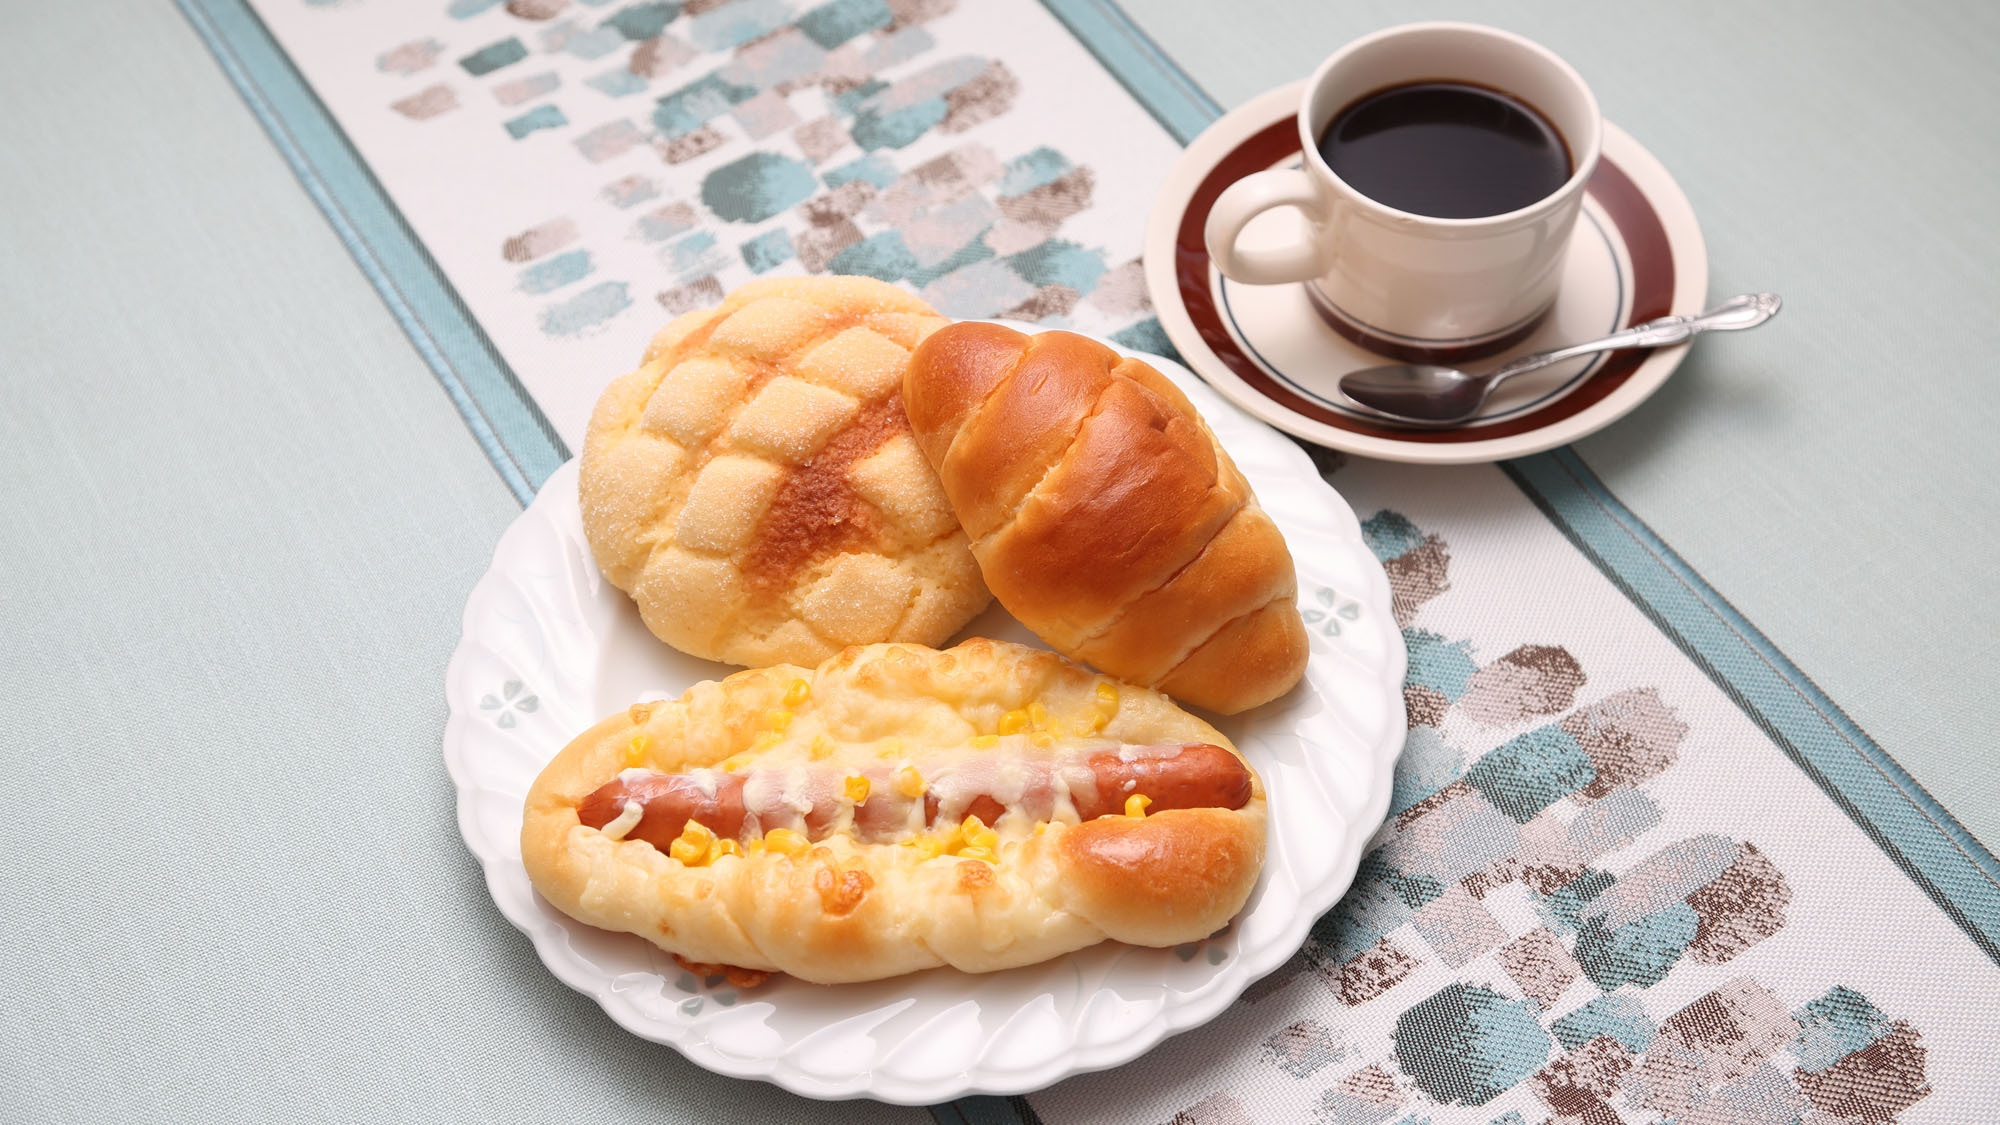 ■焼き立てパン朝食■パン屋さんの焼き立てパンを朝食で♪【セルフサービス朝食】